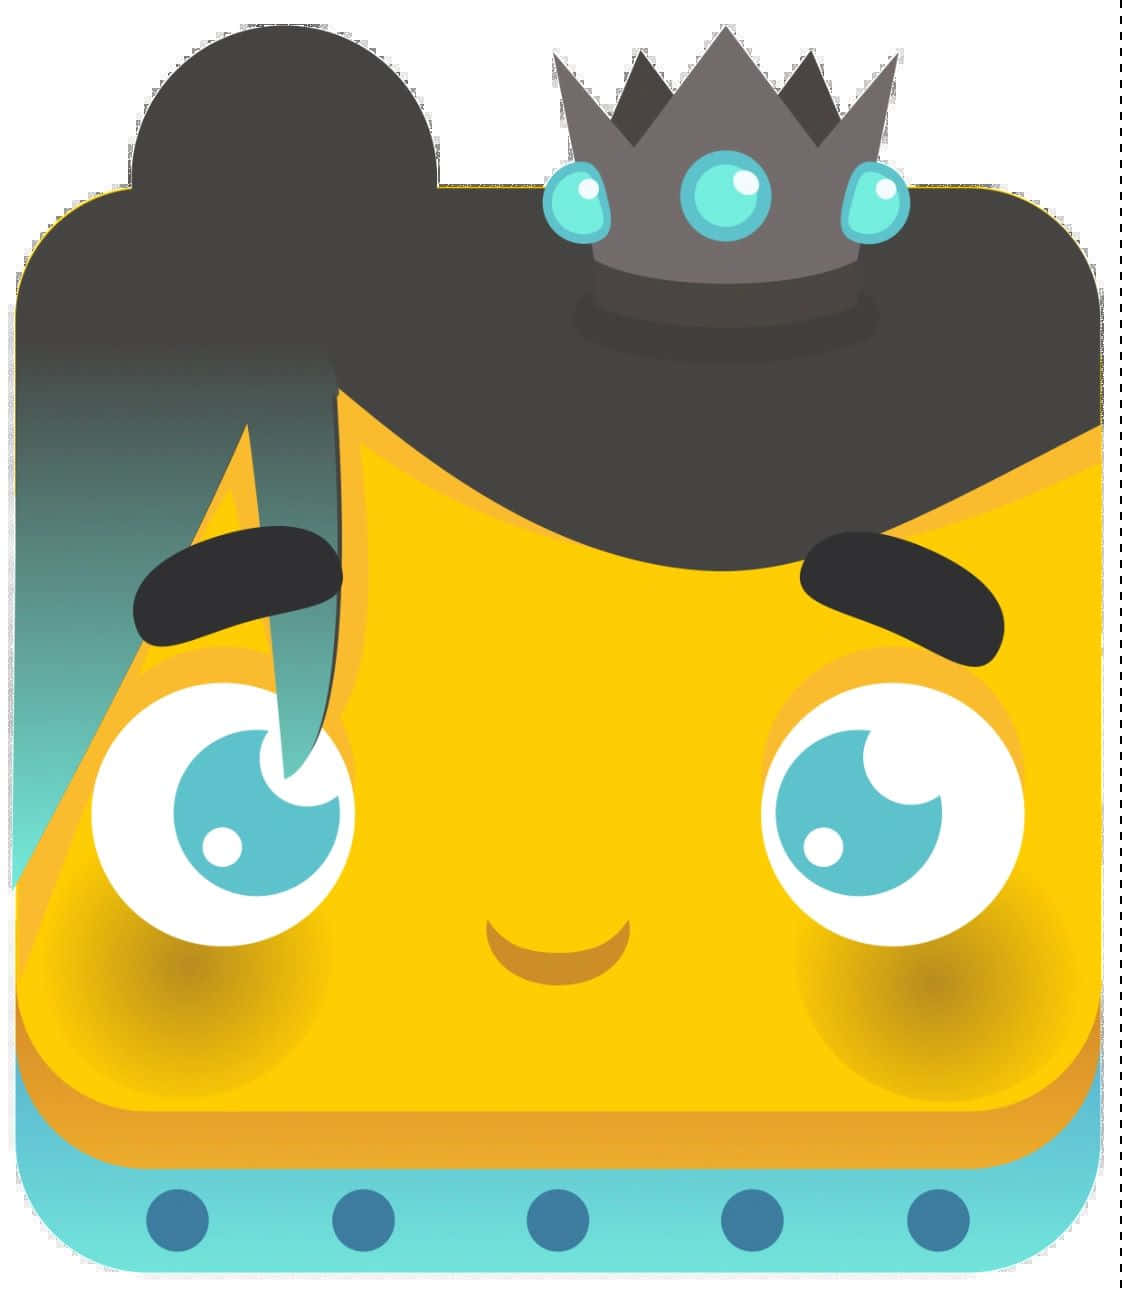 King Emoji Blooket Character Wallpaper